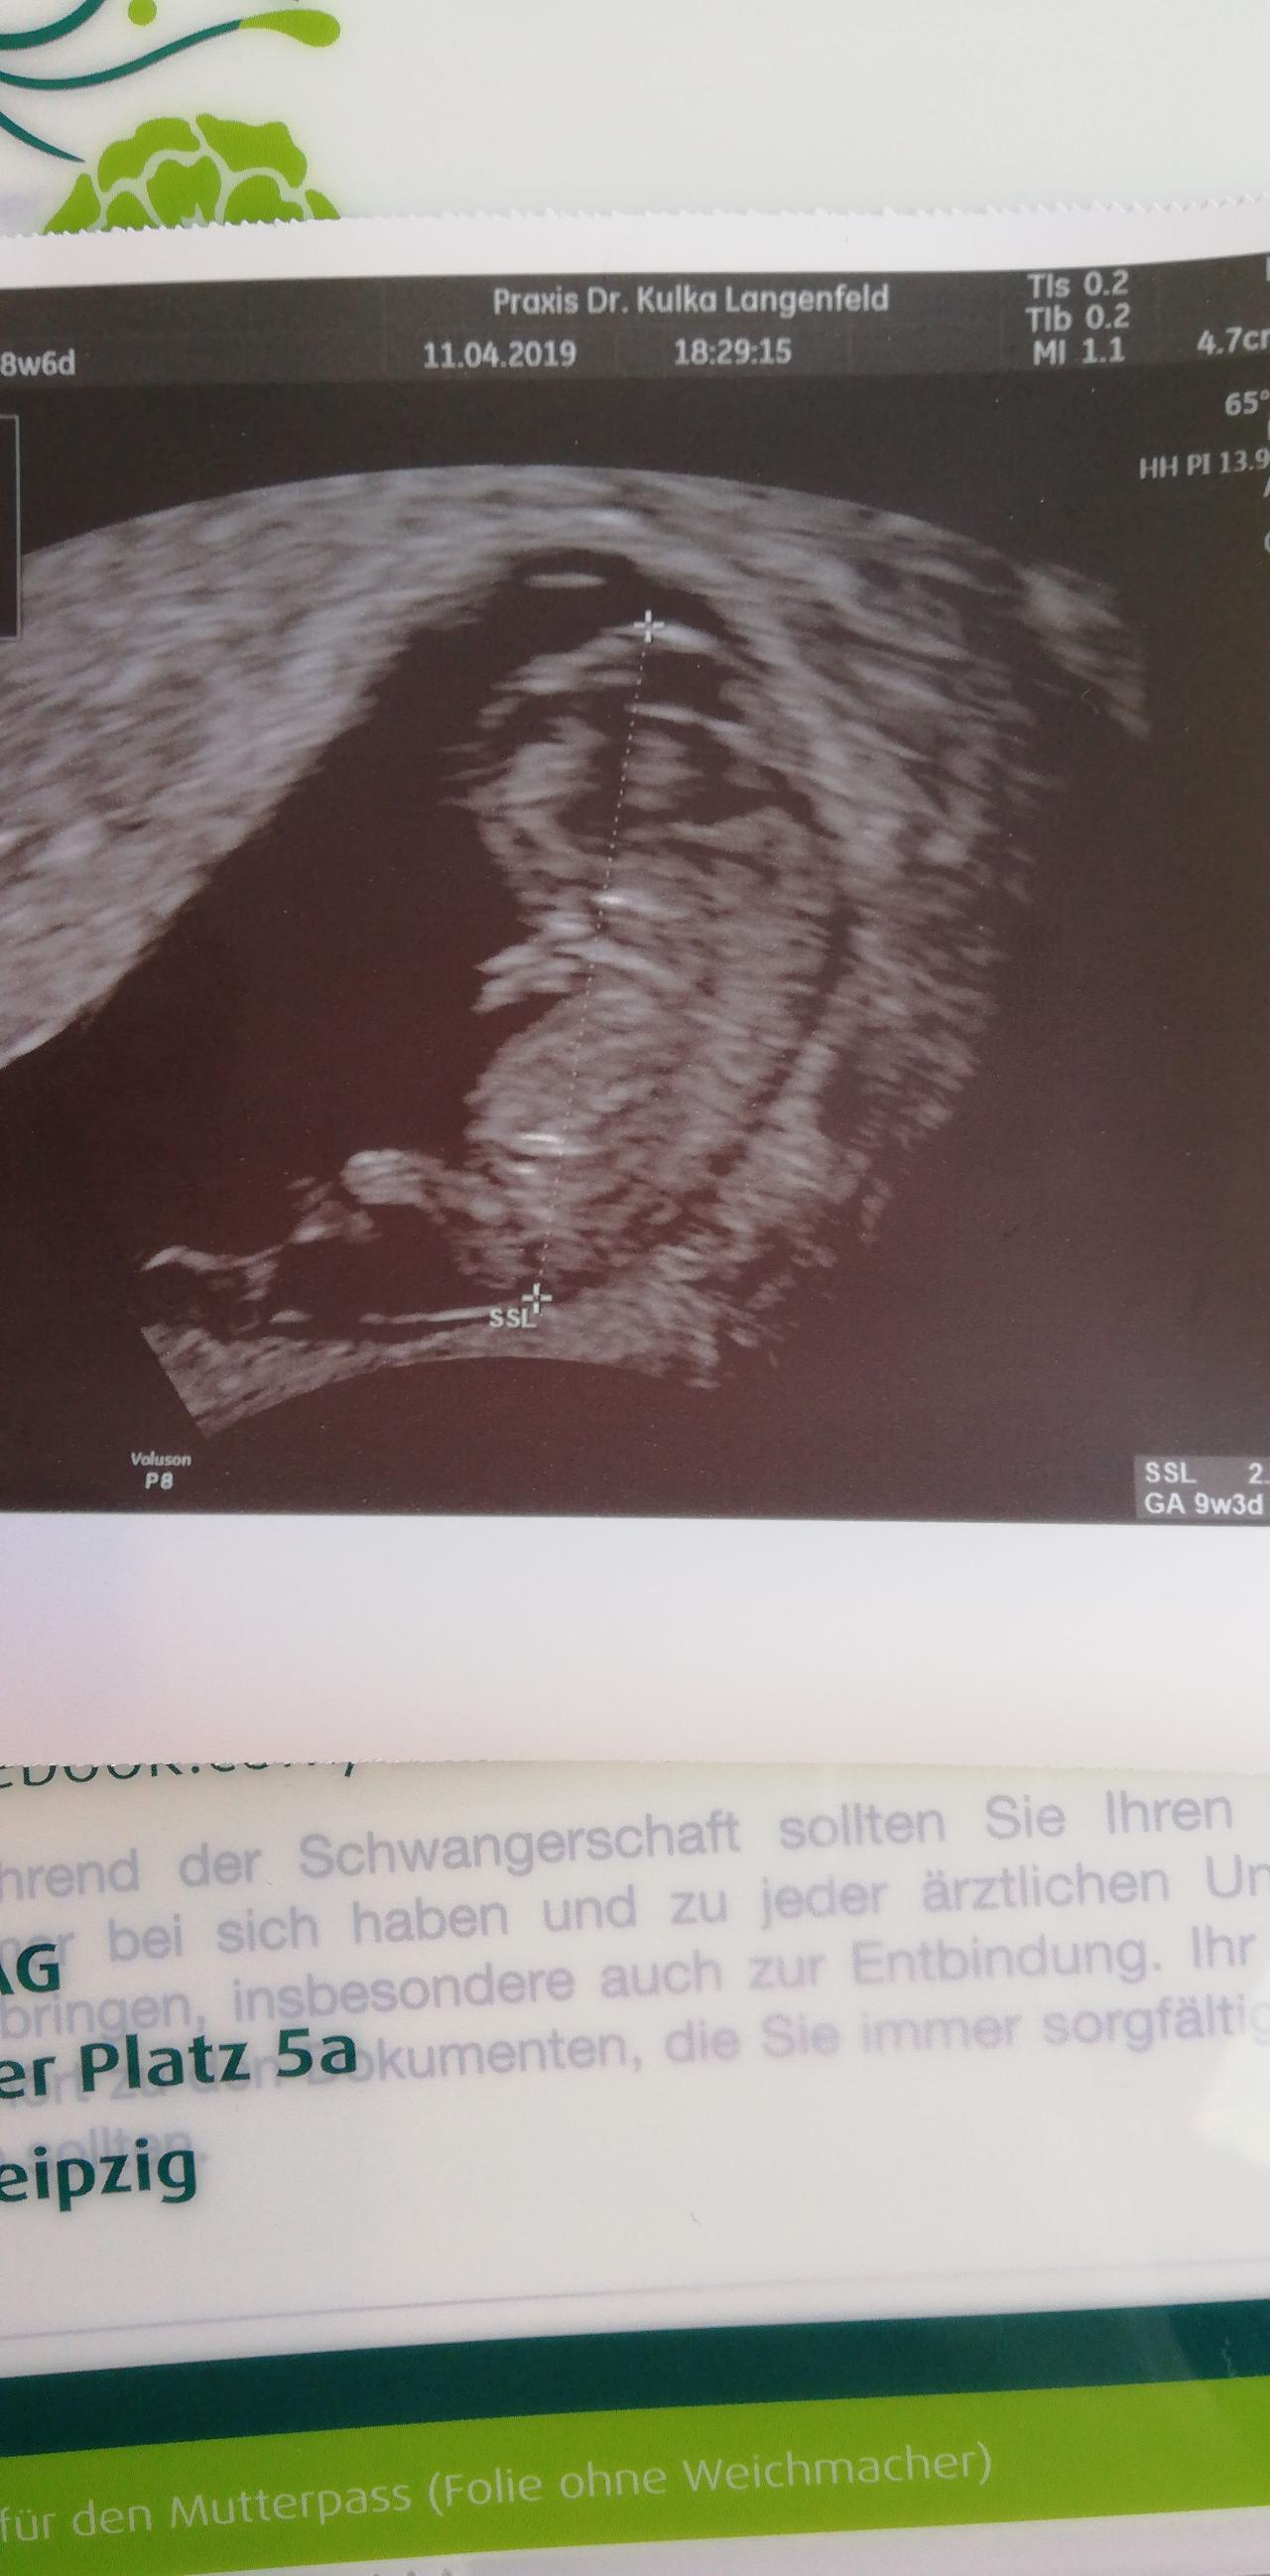 Ultraschallbild 9 ssw | Forum Schwangerschaft - urbia.de